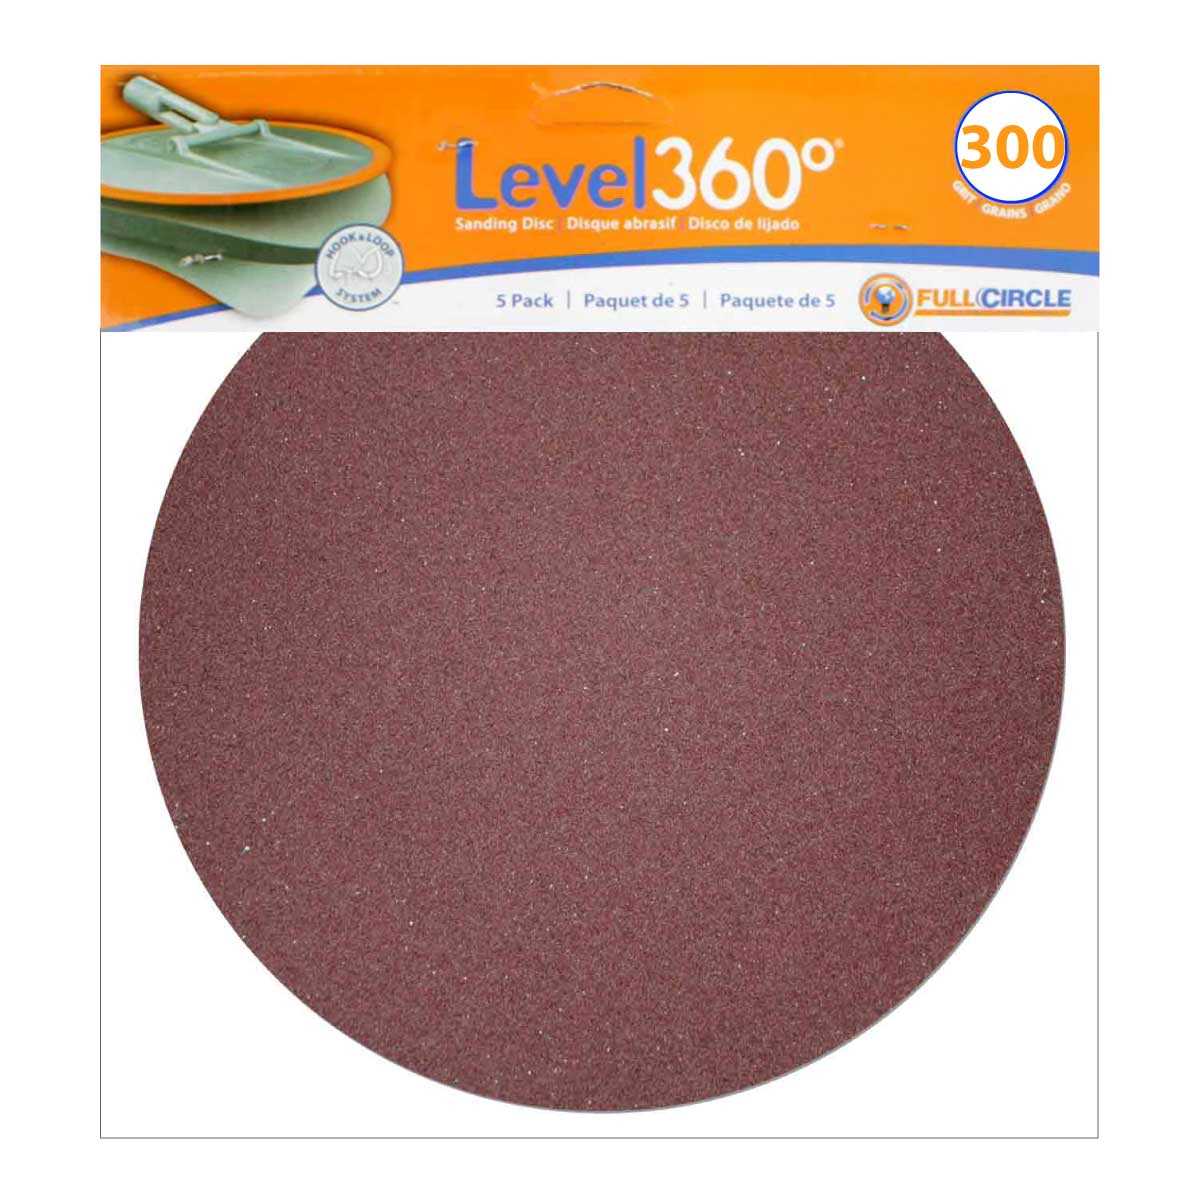 Level 360 Sanding Discs 300